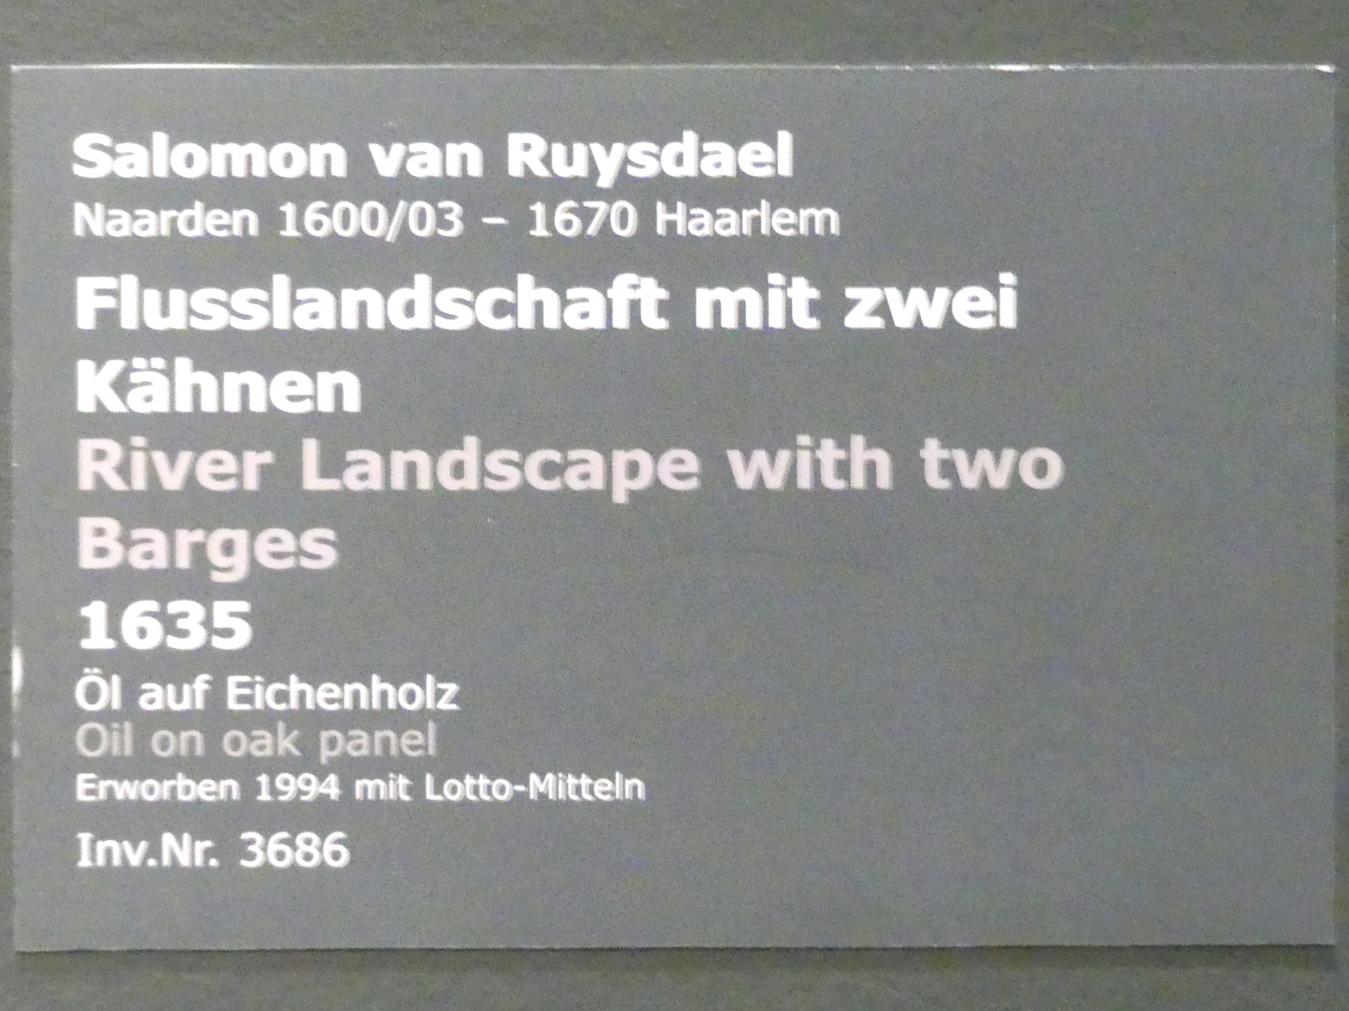 Salomon van Ruysdael (1631–1665), Flusslandschaft mit zwei Kähnen, Stuttgart, Staatsgalerie, Niederländische Malerei 3, 1635, Bild 2/2